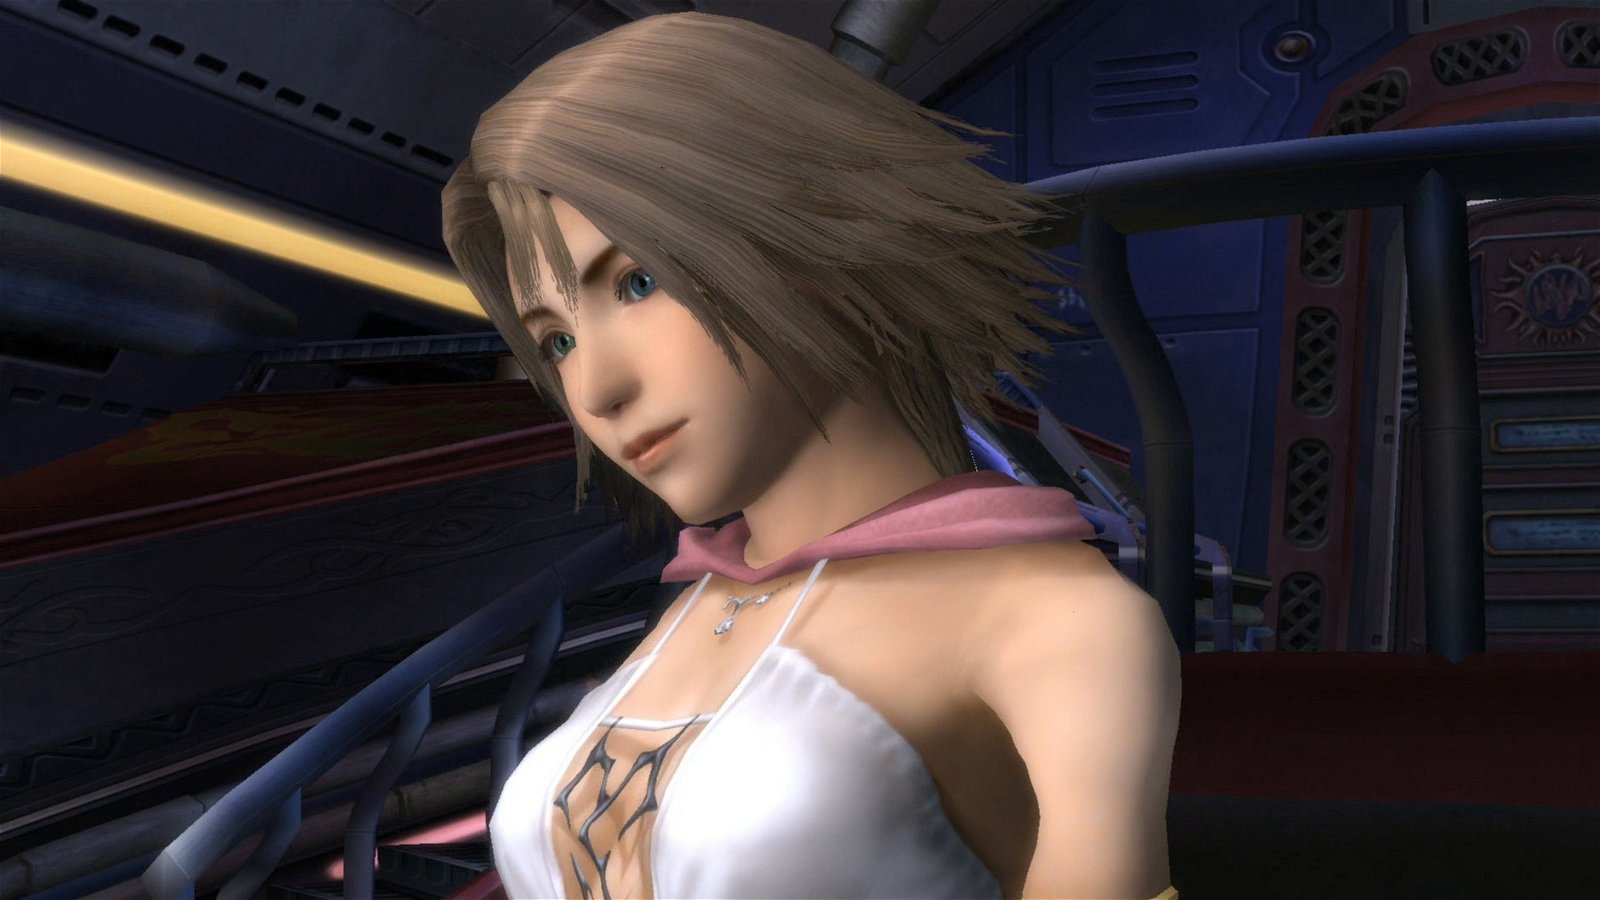 Final Fantasy: Las protagonistas femeninas, clasificadas de peor a mejor